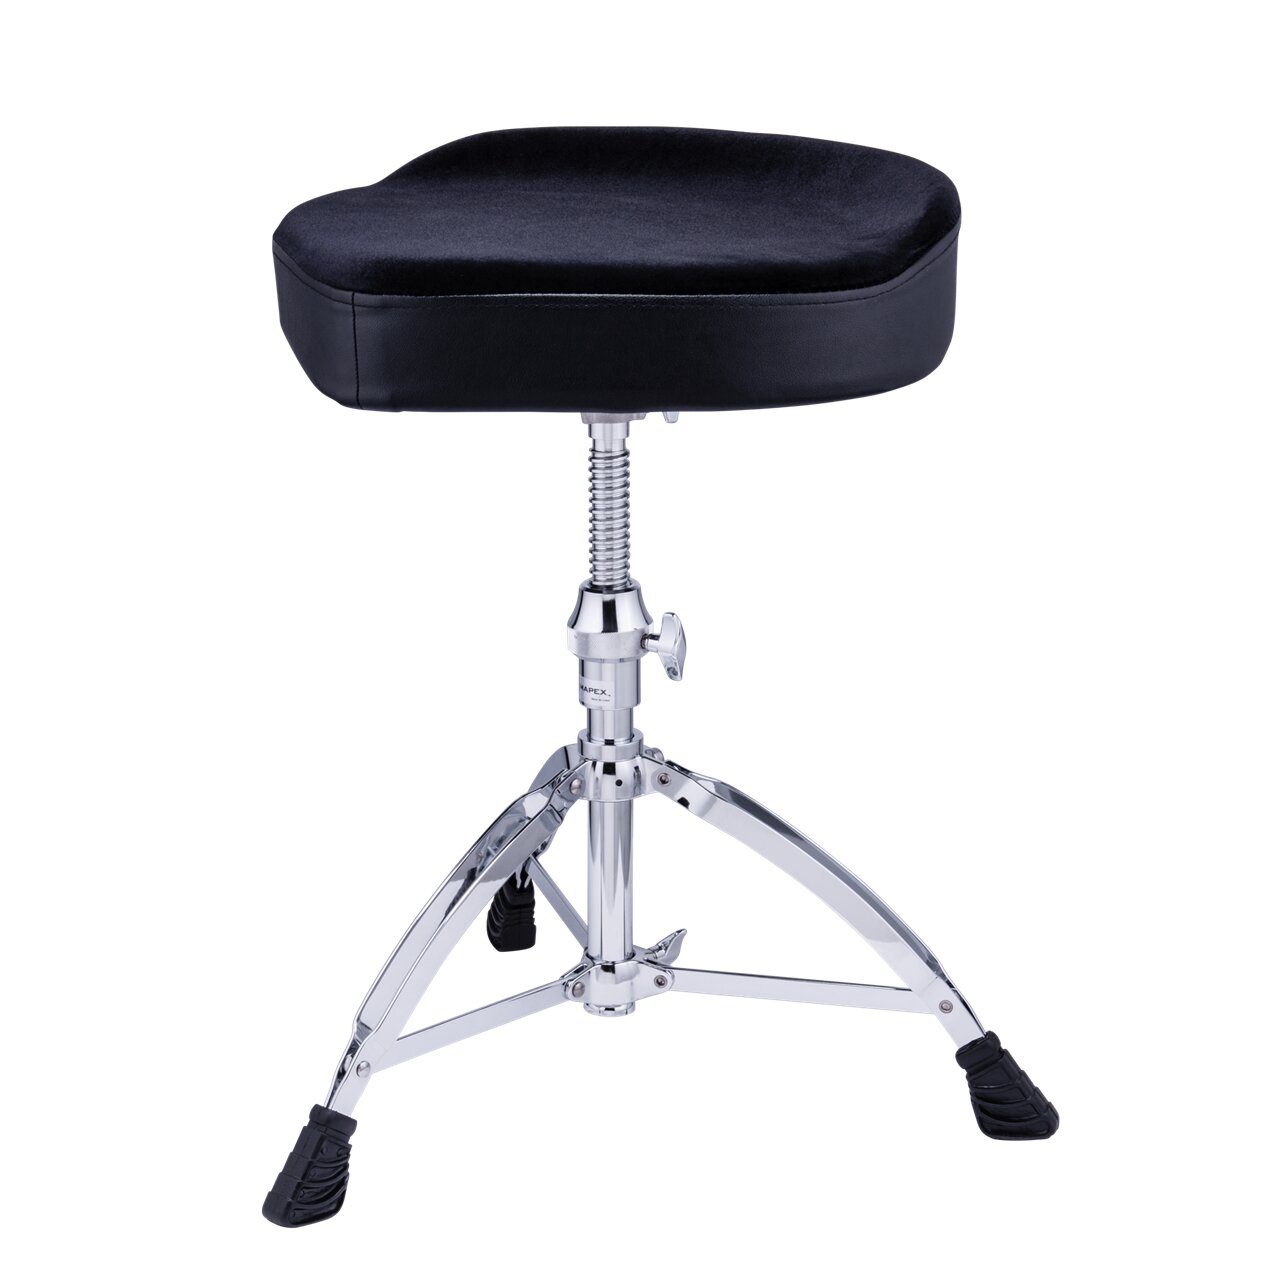 Mapex T685 ergonomic drum stool : photo 1